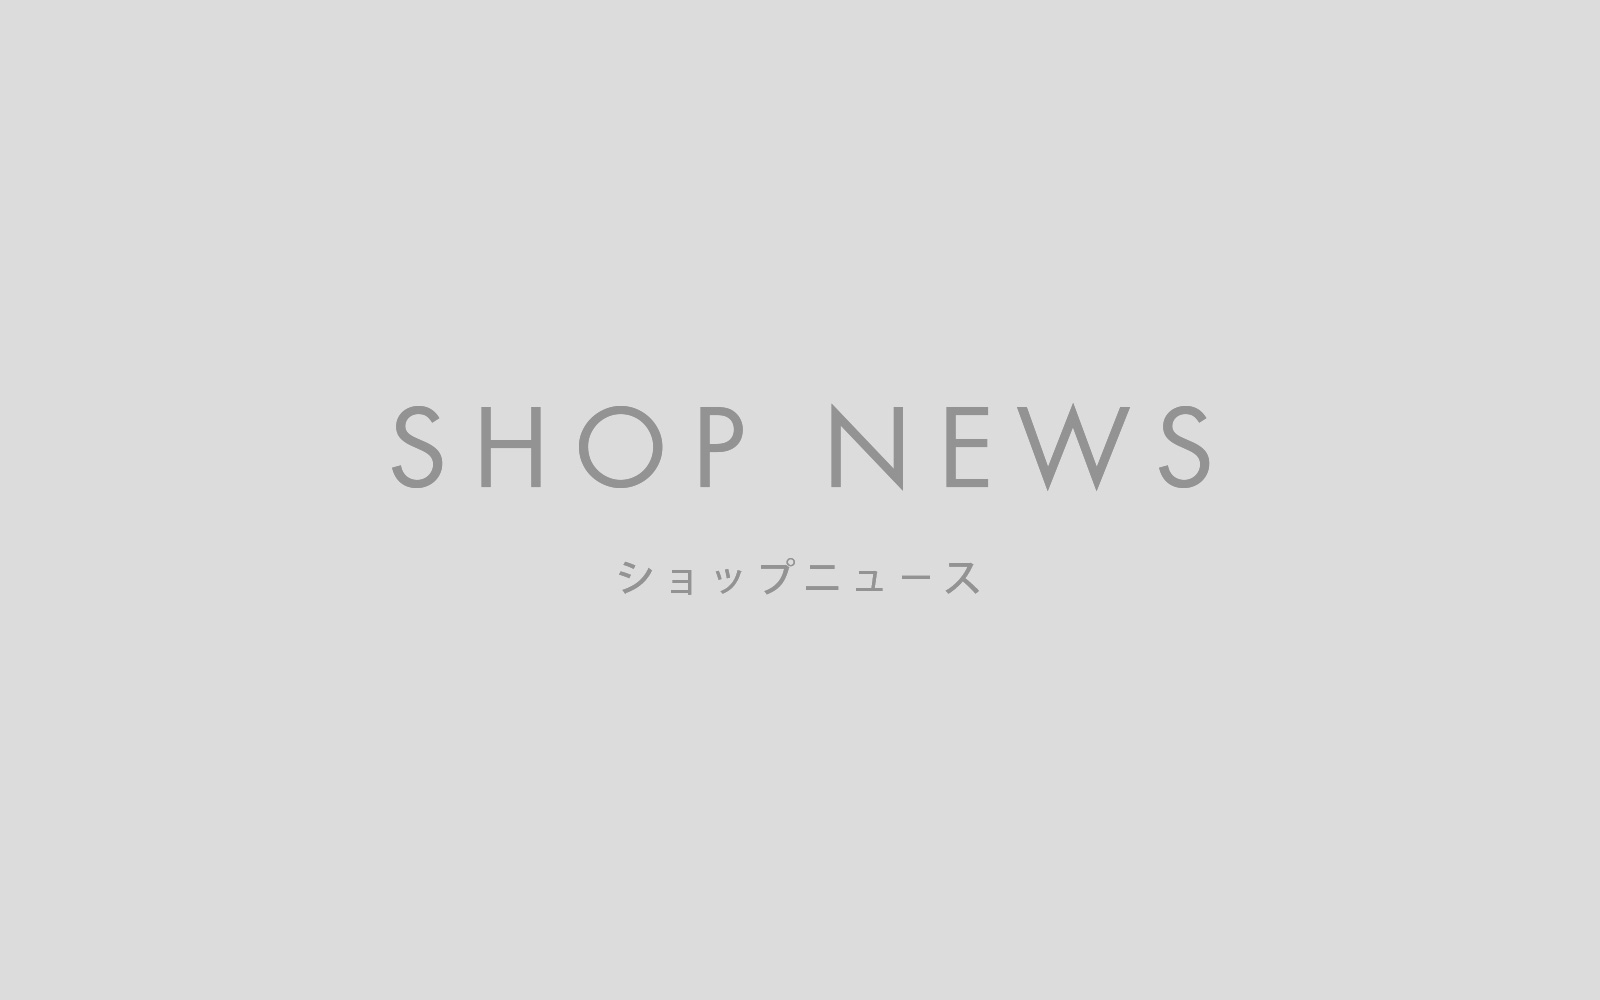 【SHOP NEWS】2022年 夏季休業のお知らせ